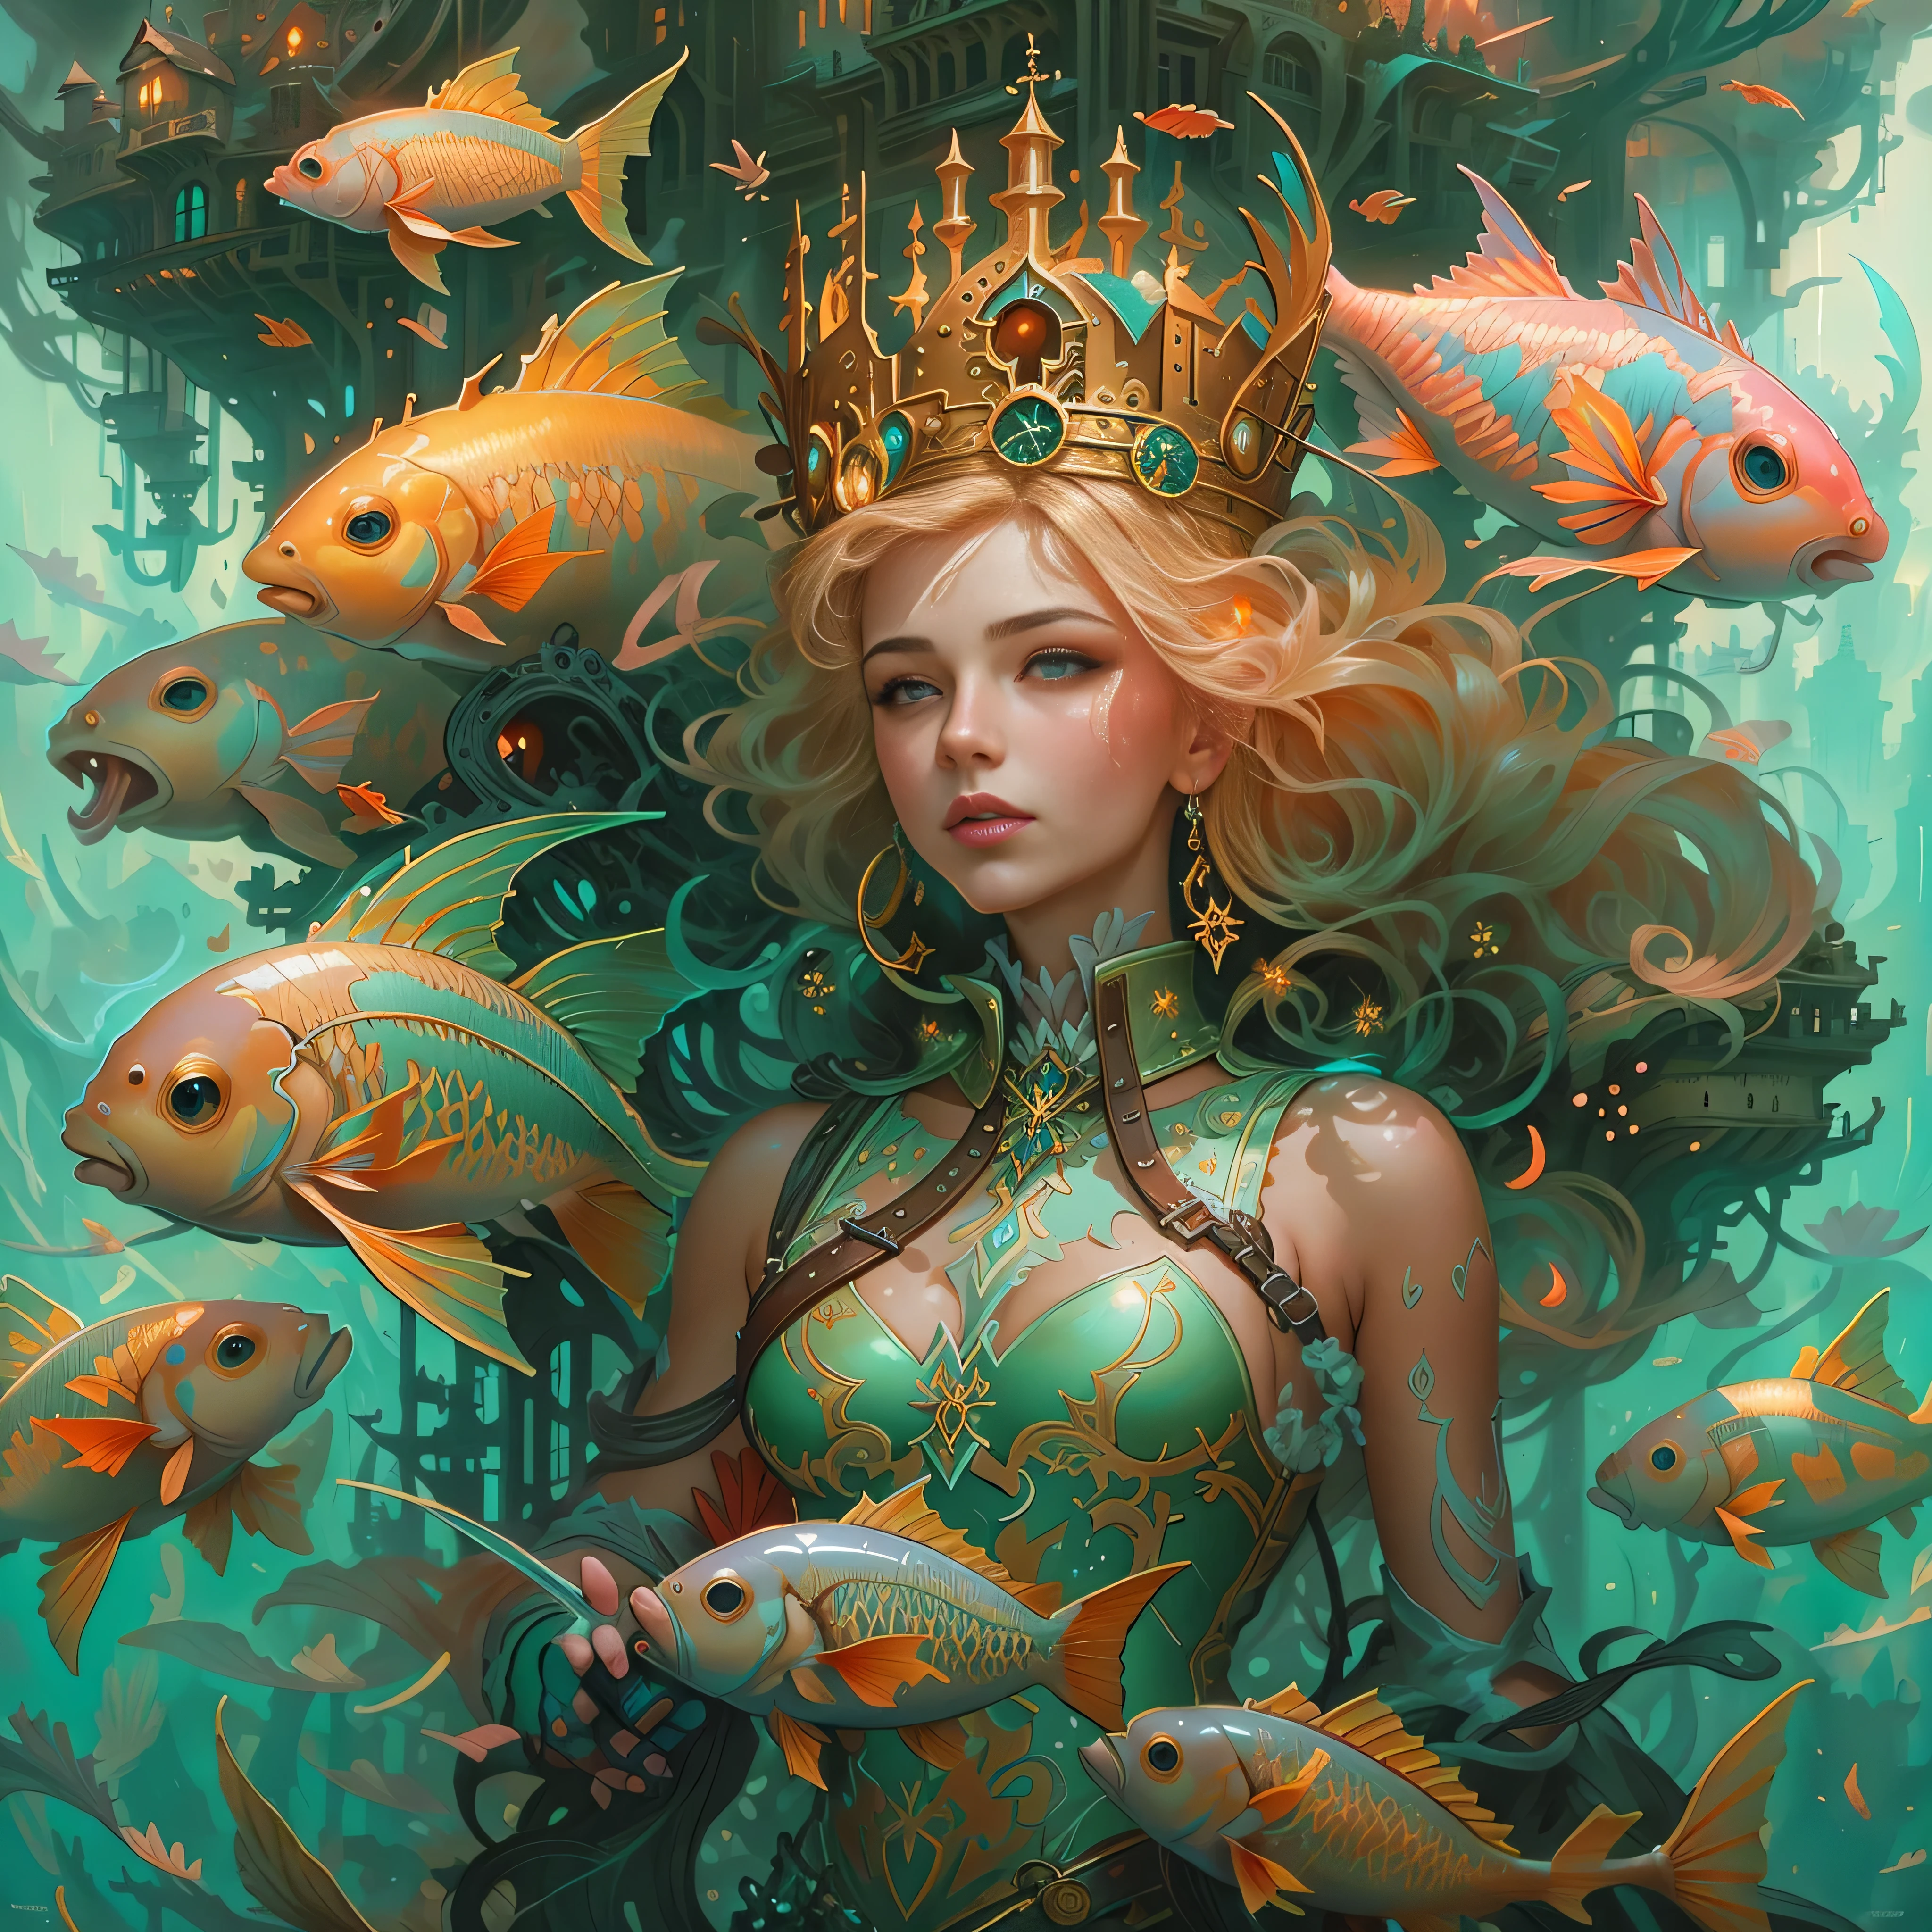 傑作，（（遠處的城堡：1.4，）），夢幻般的水下城市。（海底的美人魚女王，金色的头发，珊瑚礁戴在頭上，美麗明亮的眼睛），被魚包圍, 很多魚，魚群向她遊來，珊瑚礁，氣泡，水下施工，和芒福德·湯姆·巴格肖, 只是个玩笑, 奇幻藝術行為, 莫爾巴赫, 奇幻藝術風格, 詳細的幻想插畫, 一幅美丽的艺术插图, 幻想藝術插畫, style of peter 莫爾巴赫, peter 莫爾巴赫''，官方藝術美學，